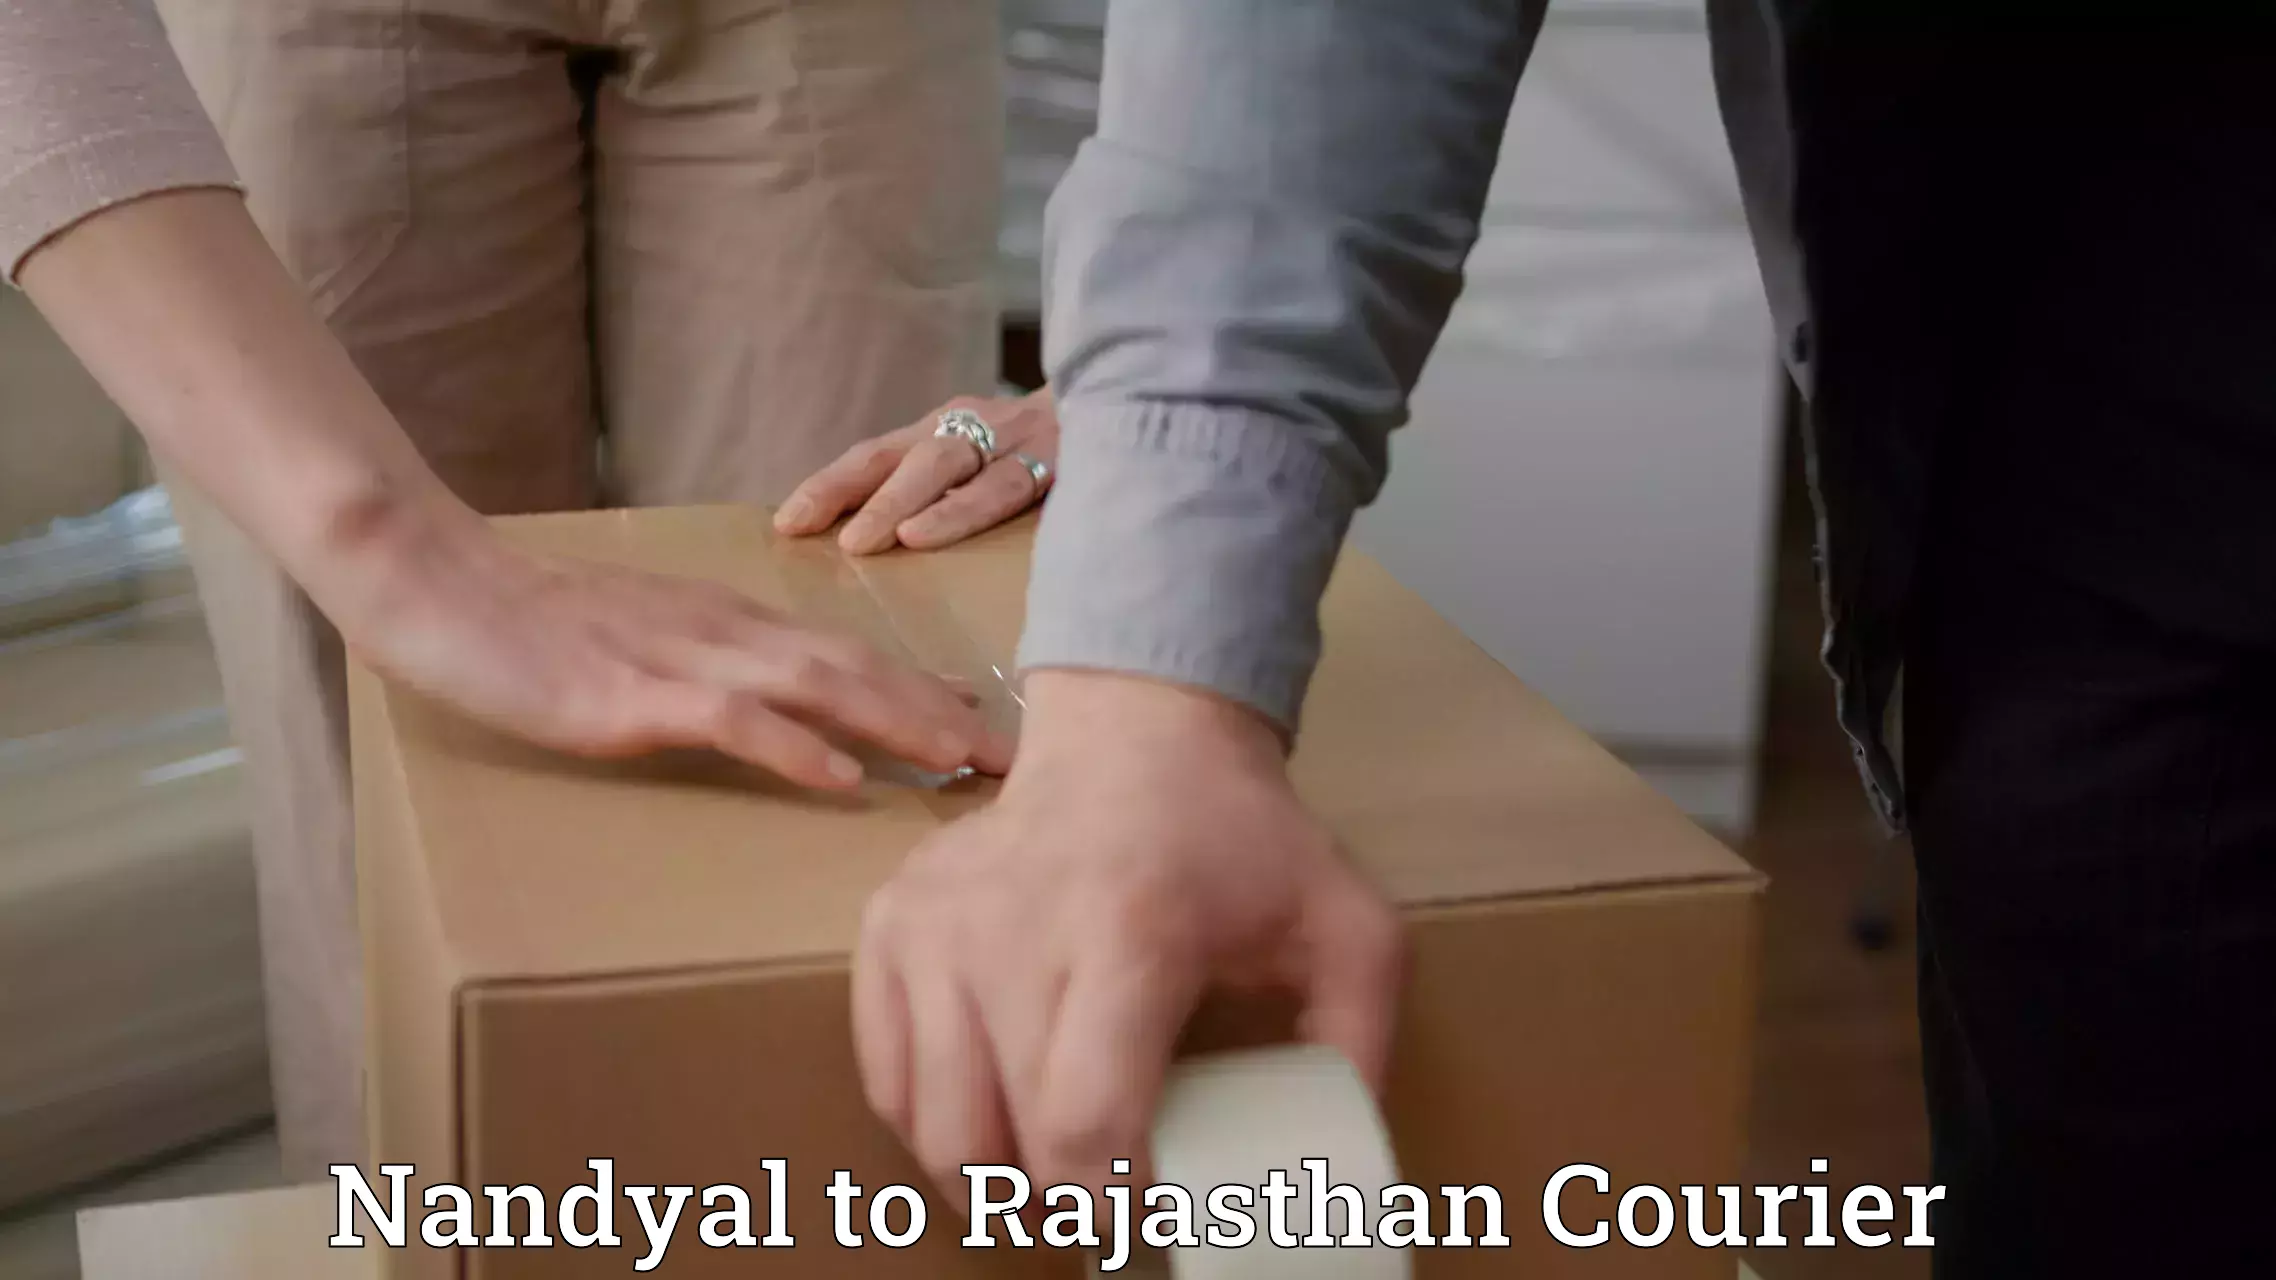 Tracking updates Nandyal to Rajasthan